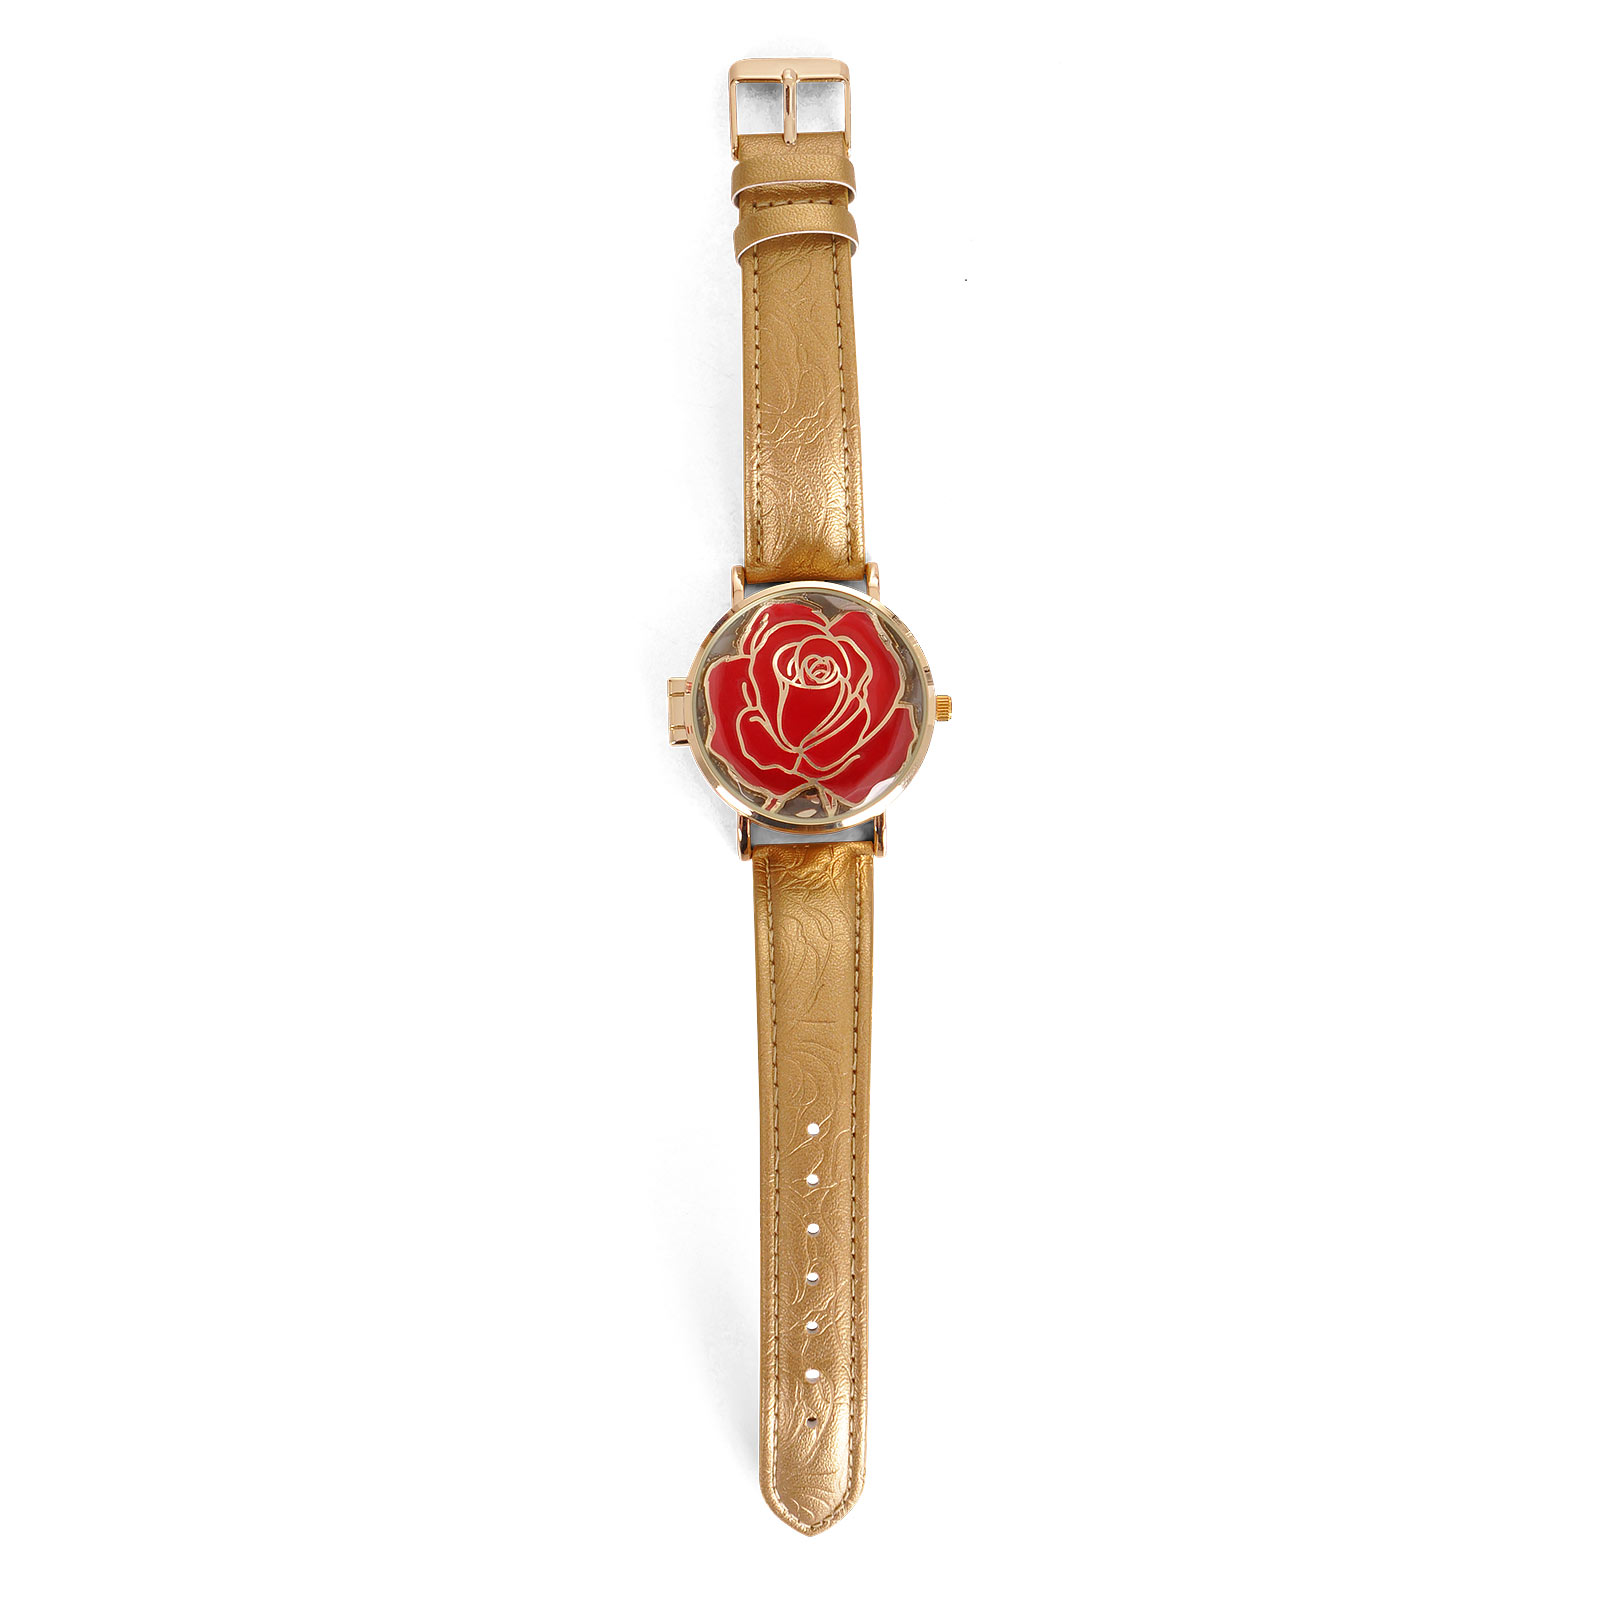 Die Schöne und das Biest - Enchanted Rose Armbanduhr